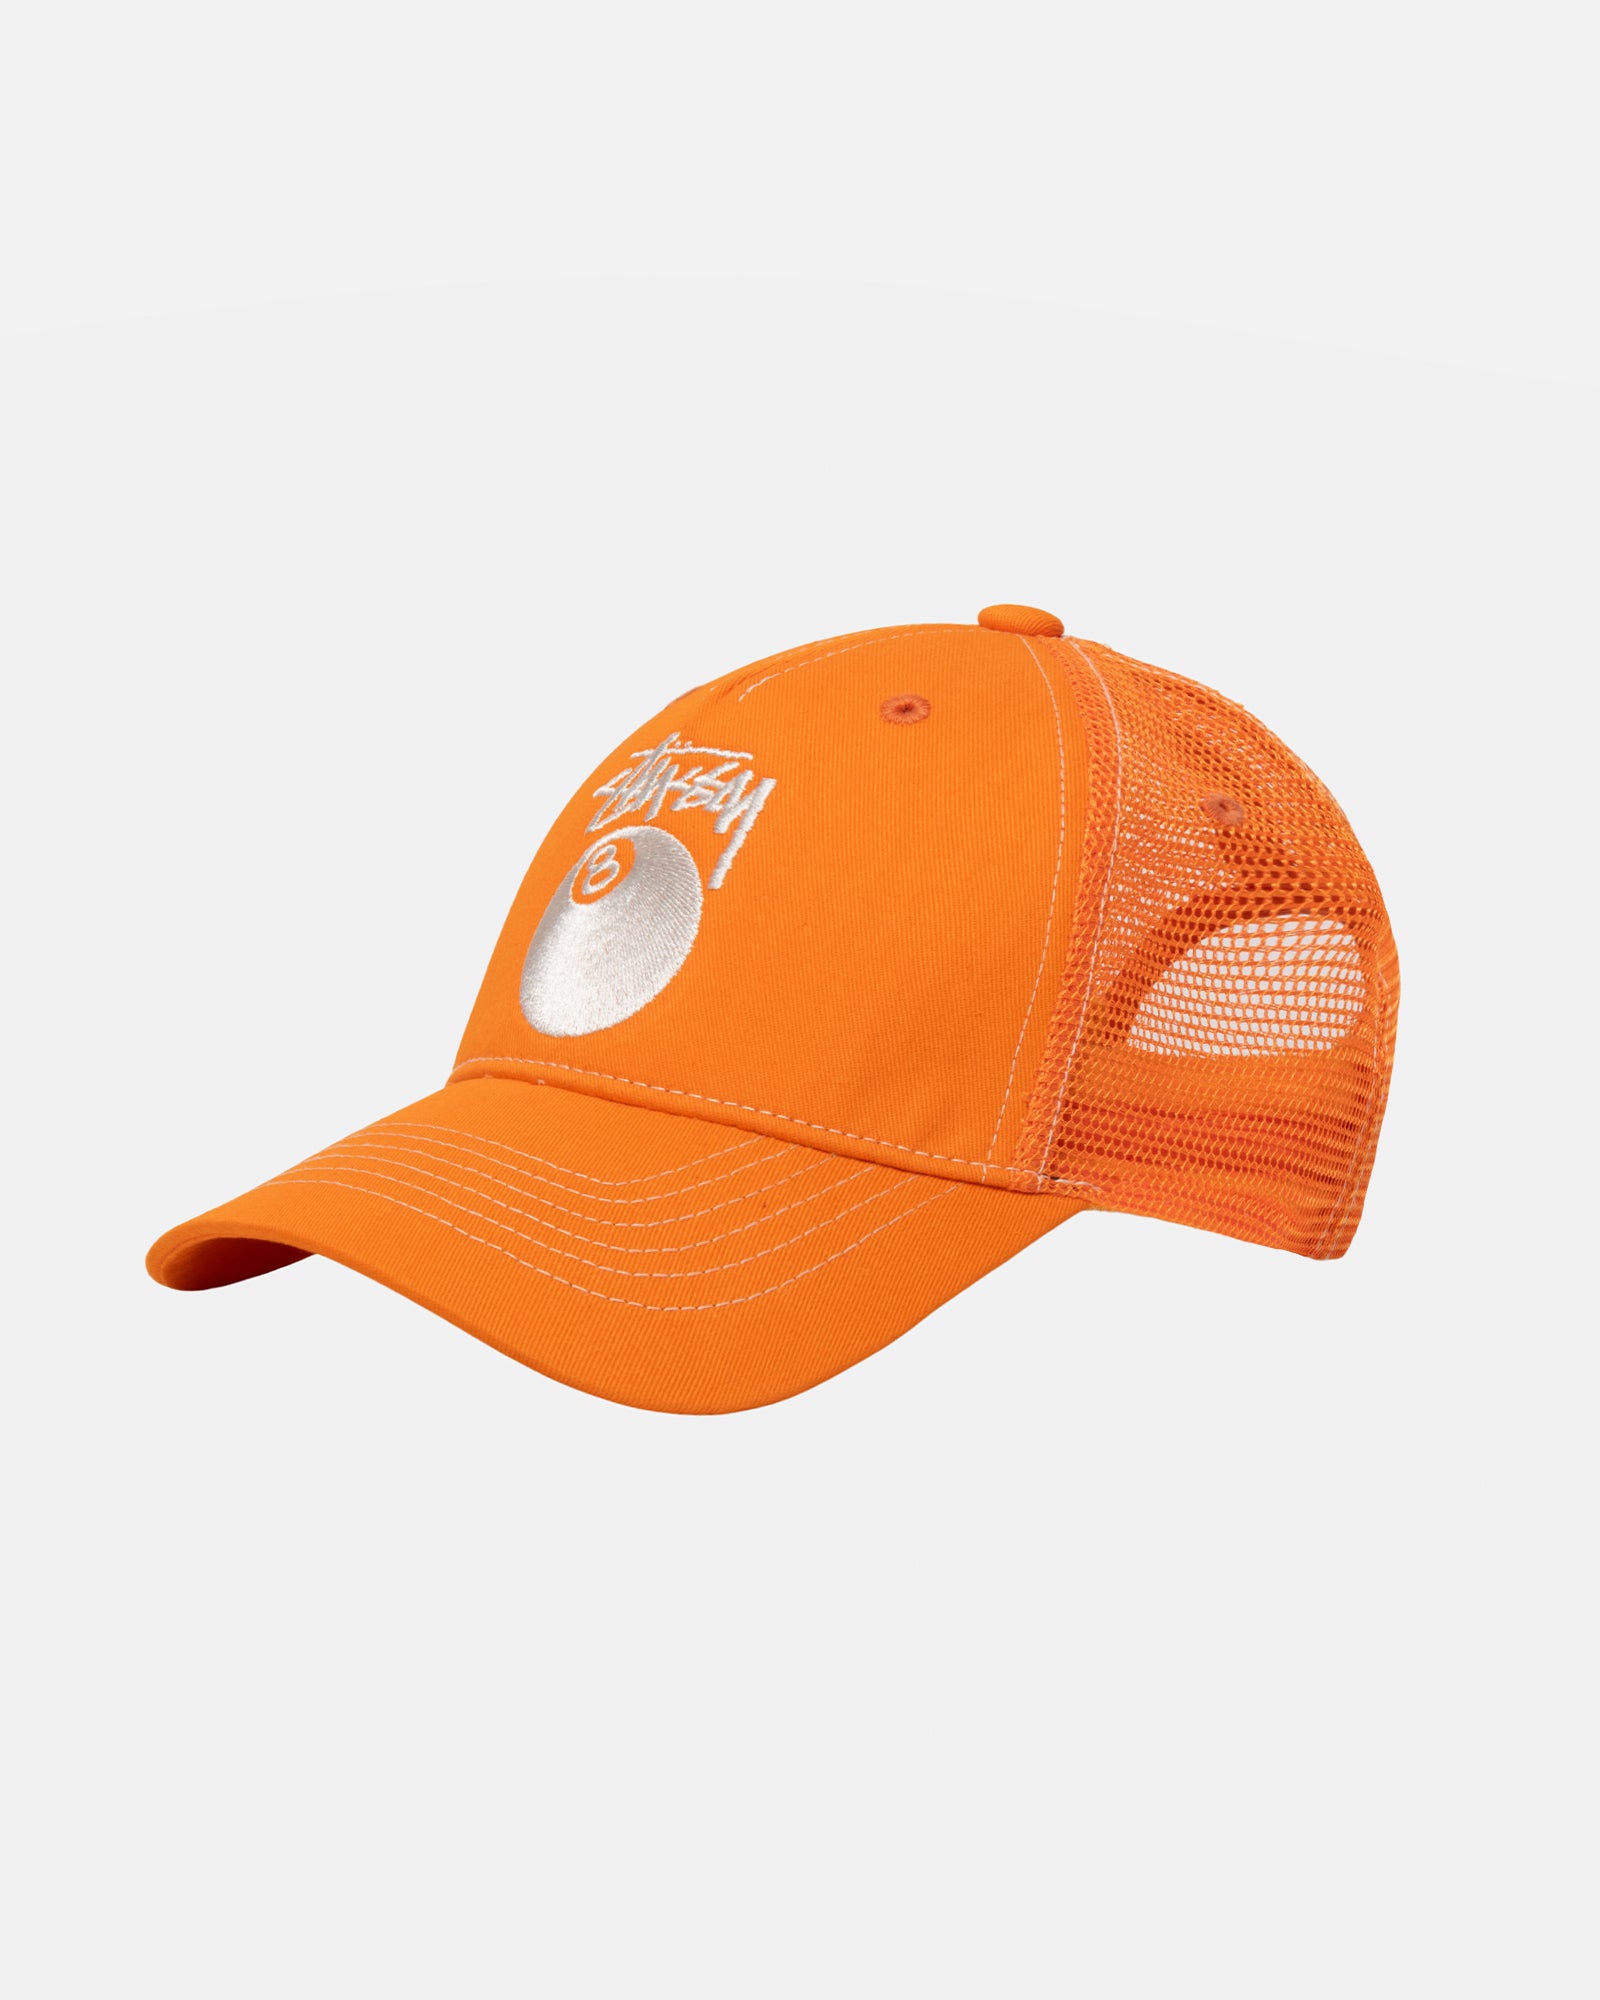 Stüssy Low Pro Trucker 8 Ball Snapback Orange Headwear